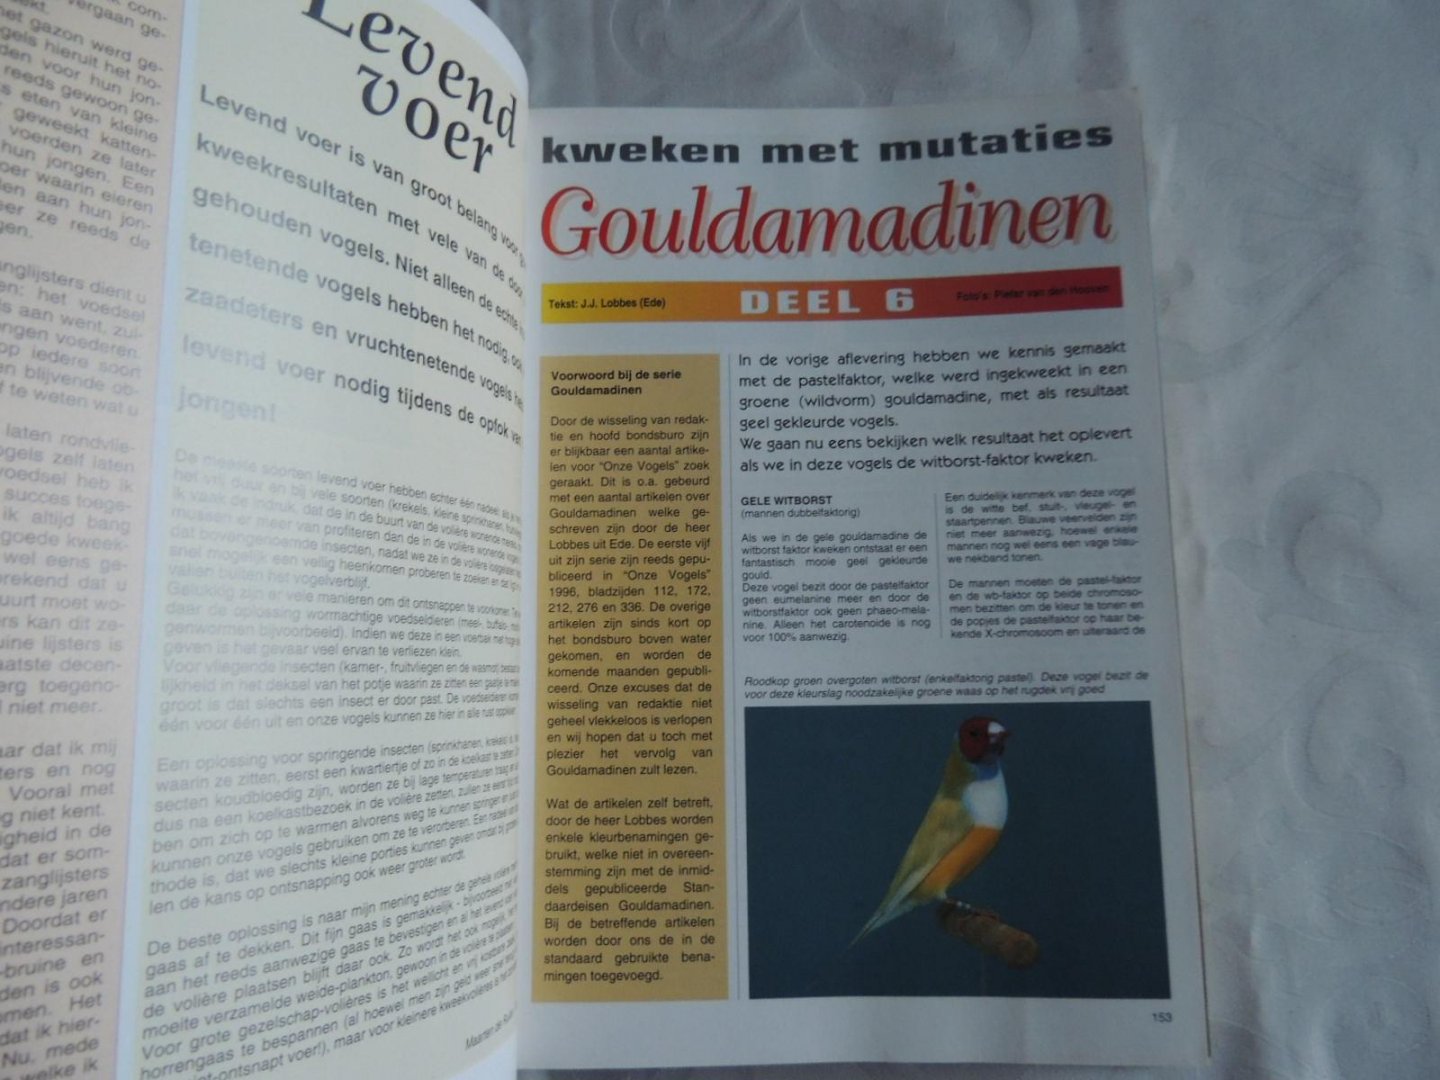 Indiener Oh jee Madison Boekwinkeltjes.nl - Onze vogels. Maandblad van de nederlandse bond van  vogellief